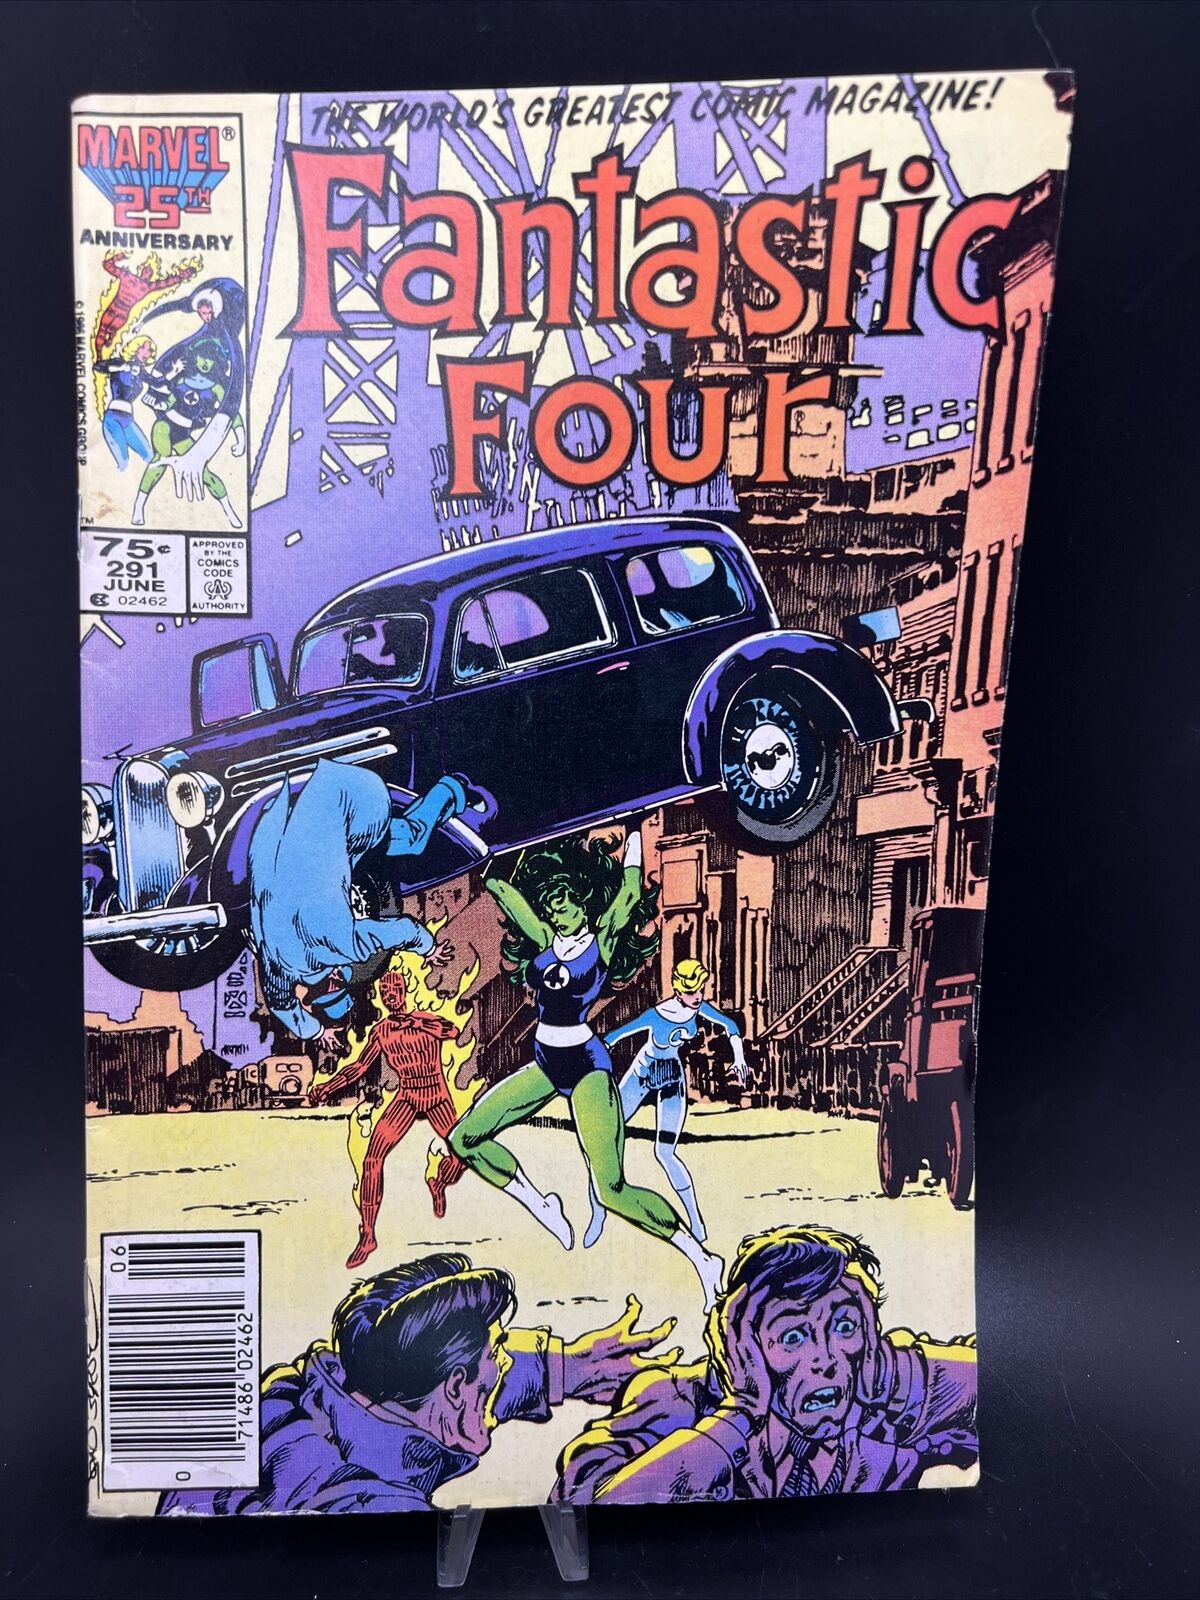 Fantastic Four #291 (Marvel Comics, June 1986) She-Hulk John Byrne